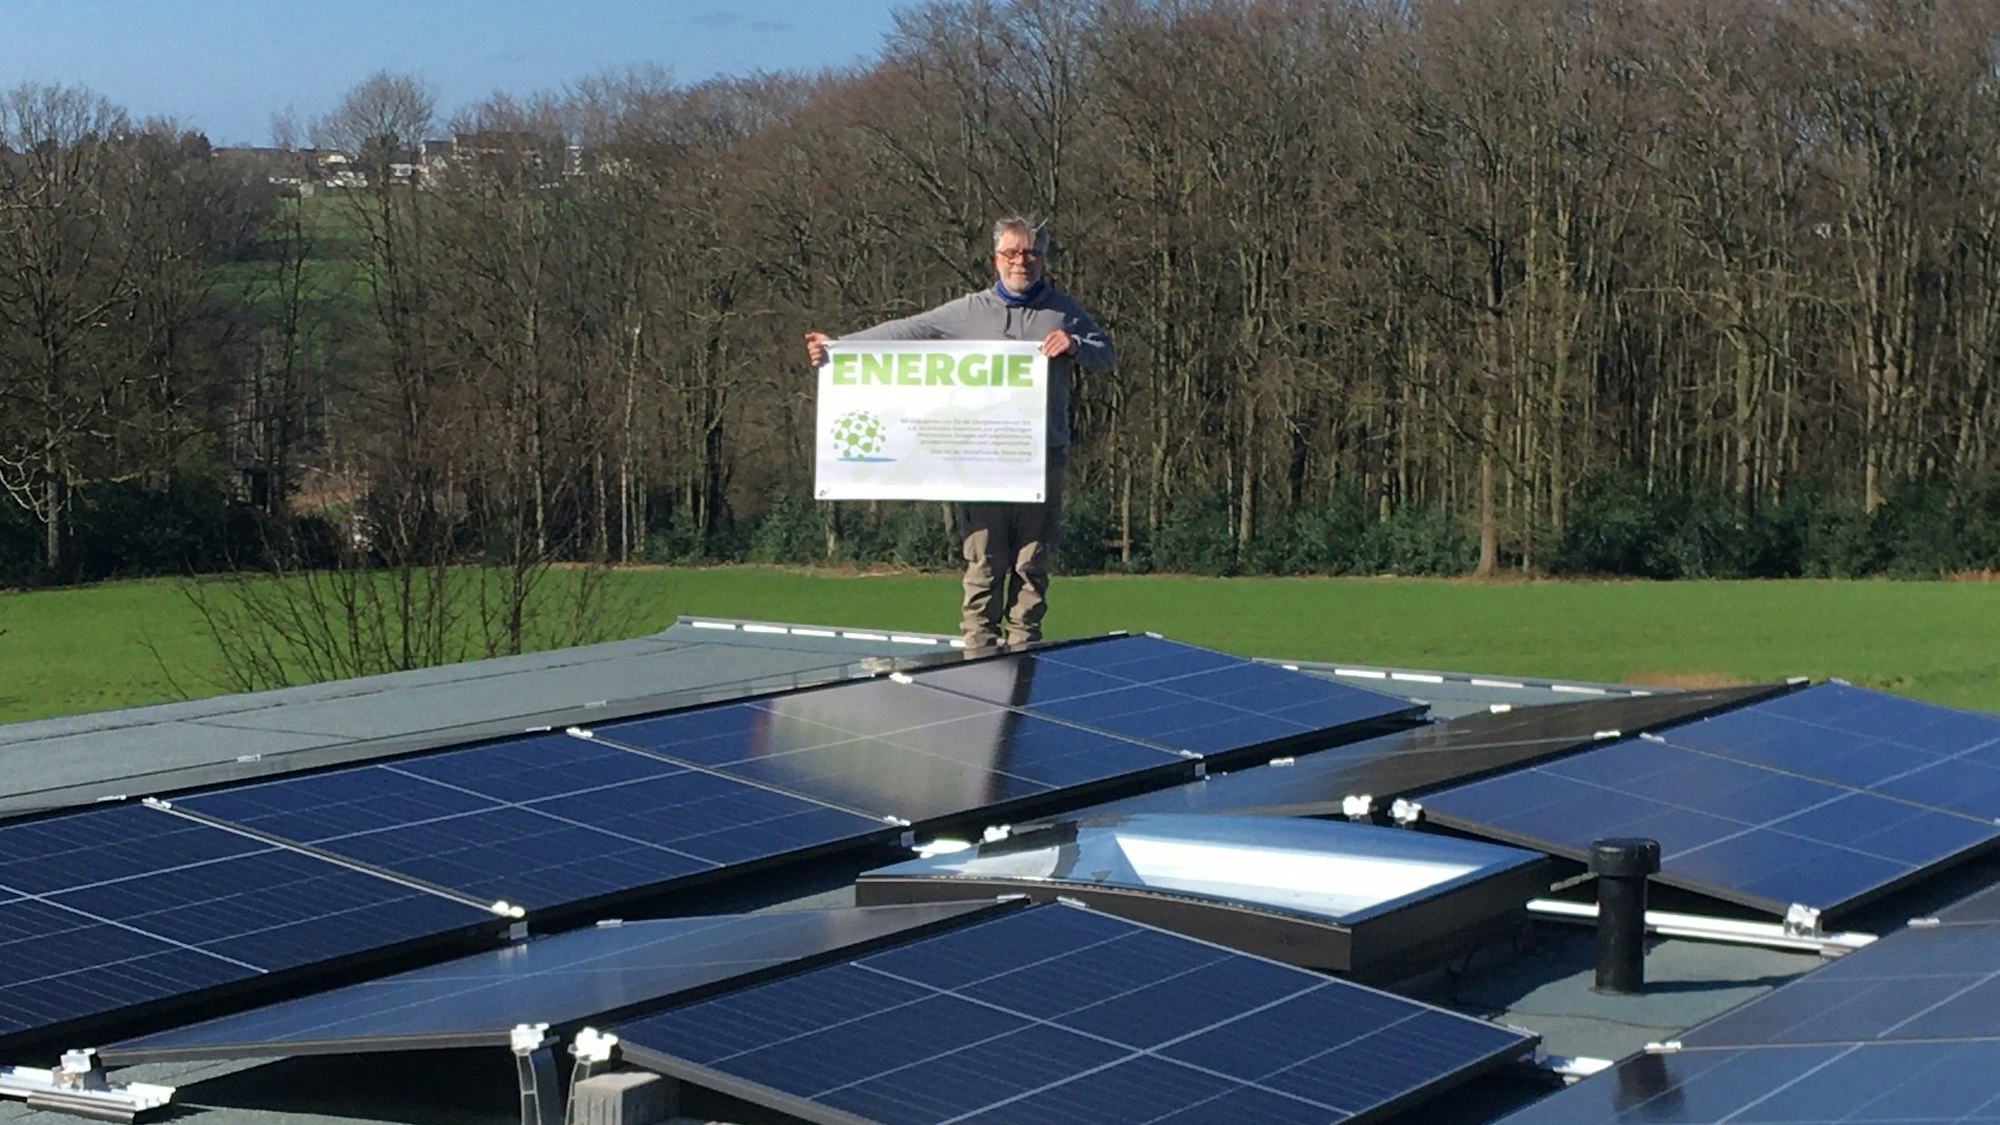 Stefan Häusler, Vorsitzender der Klimafreunde Rhein-Berg, steht auf einer Fotovoltaikanlage und hält ein Schild mit der Aufschrift „Energie“.